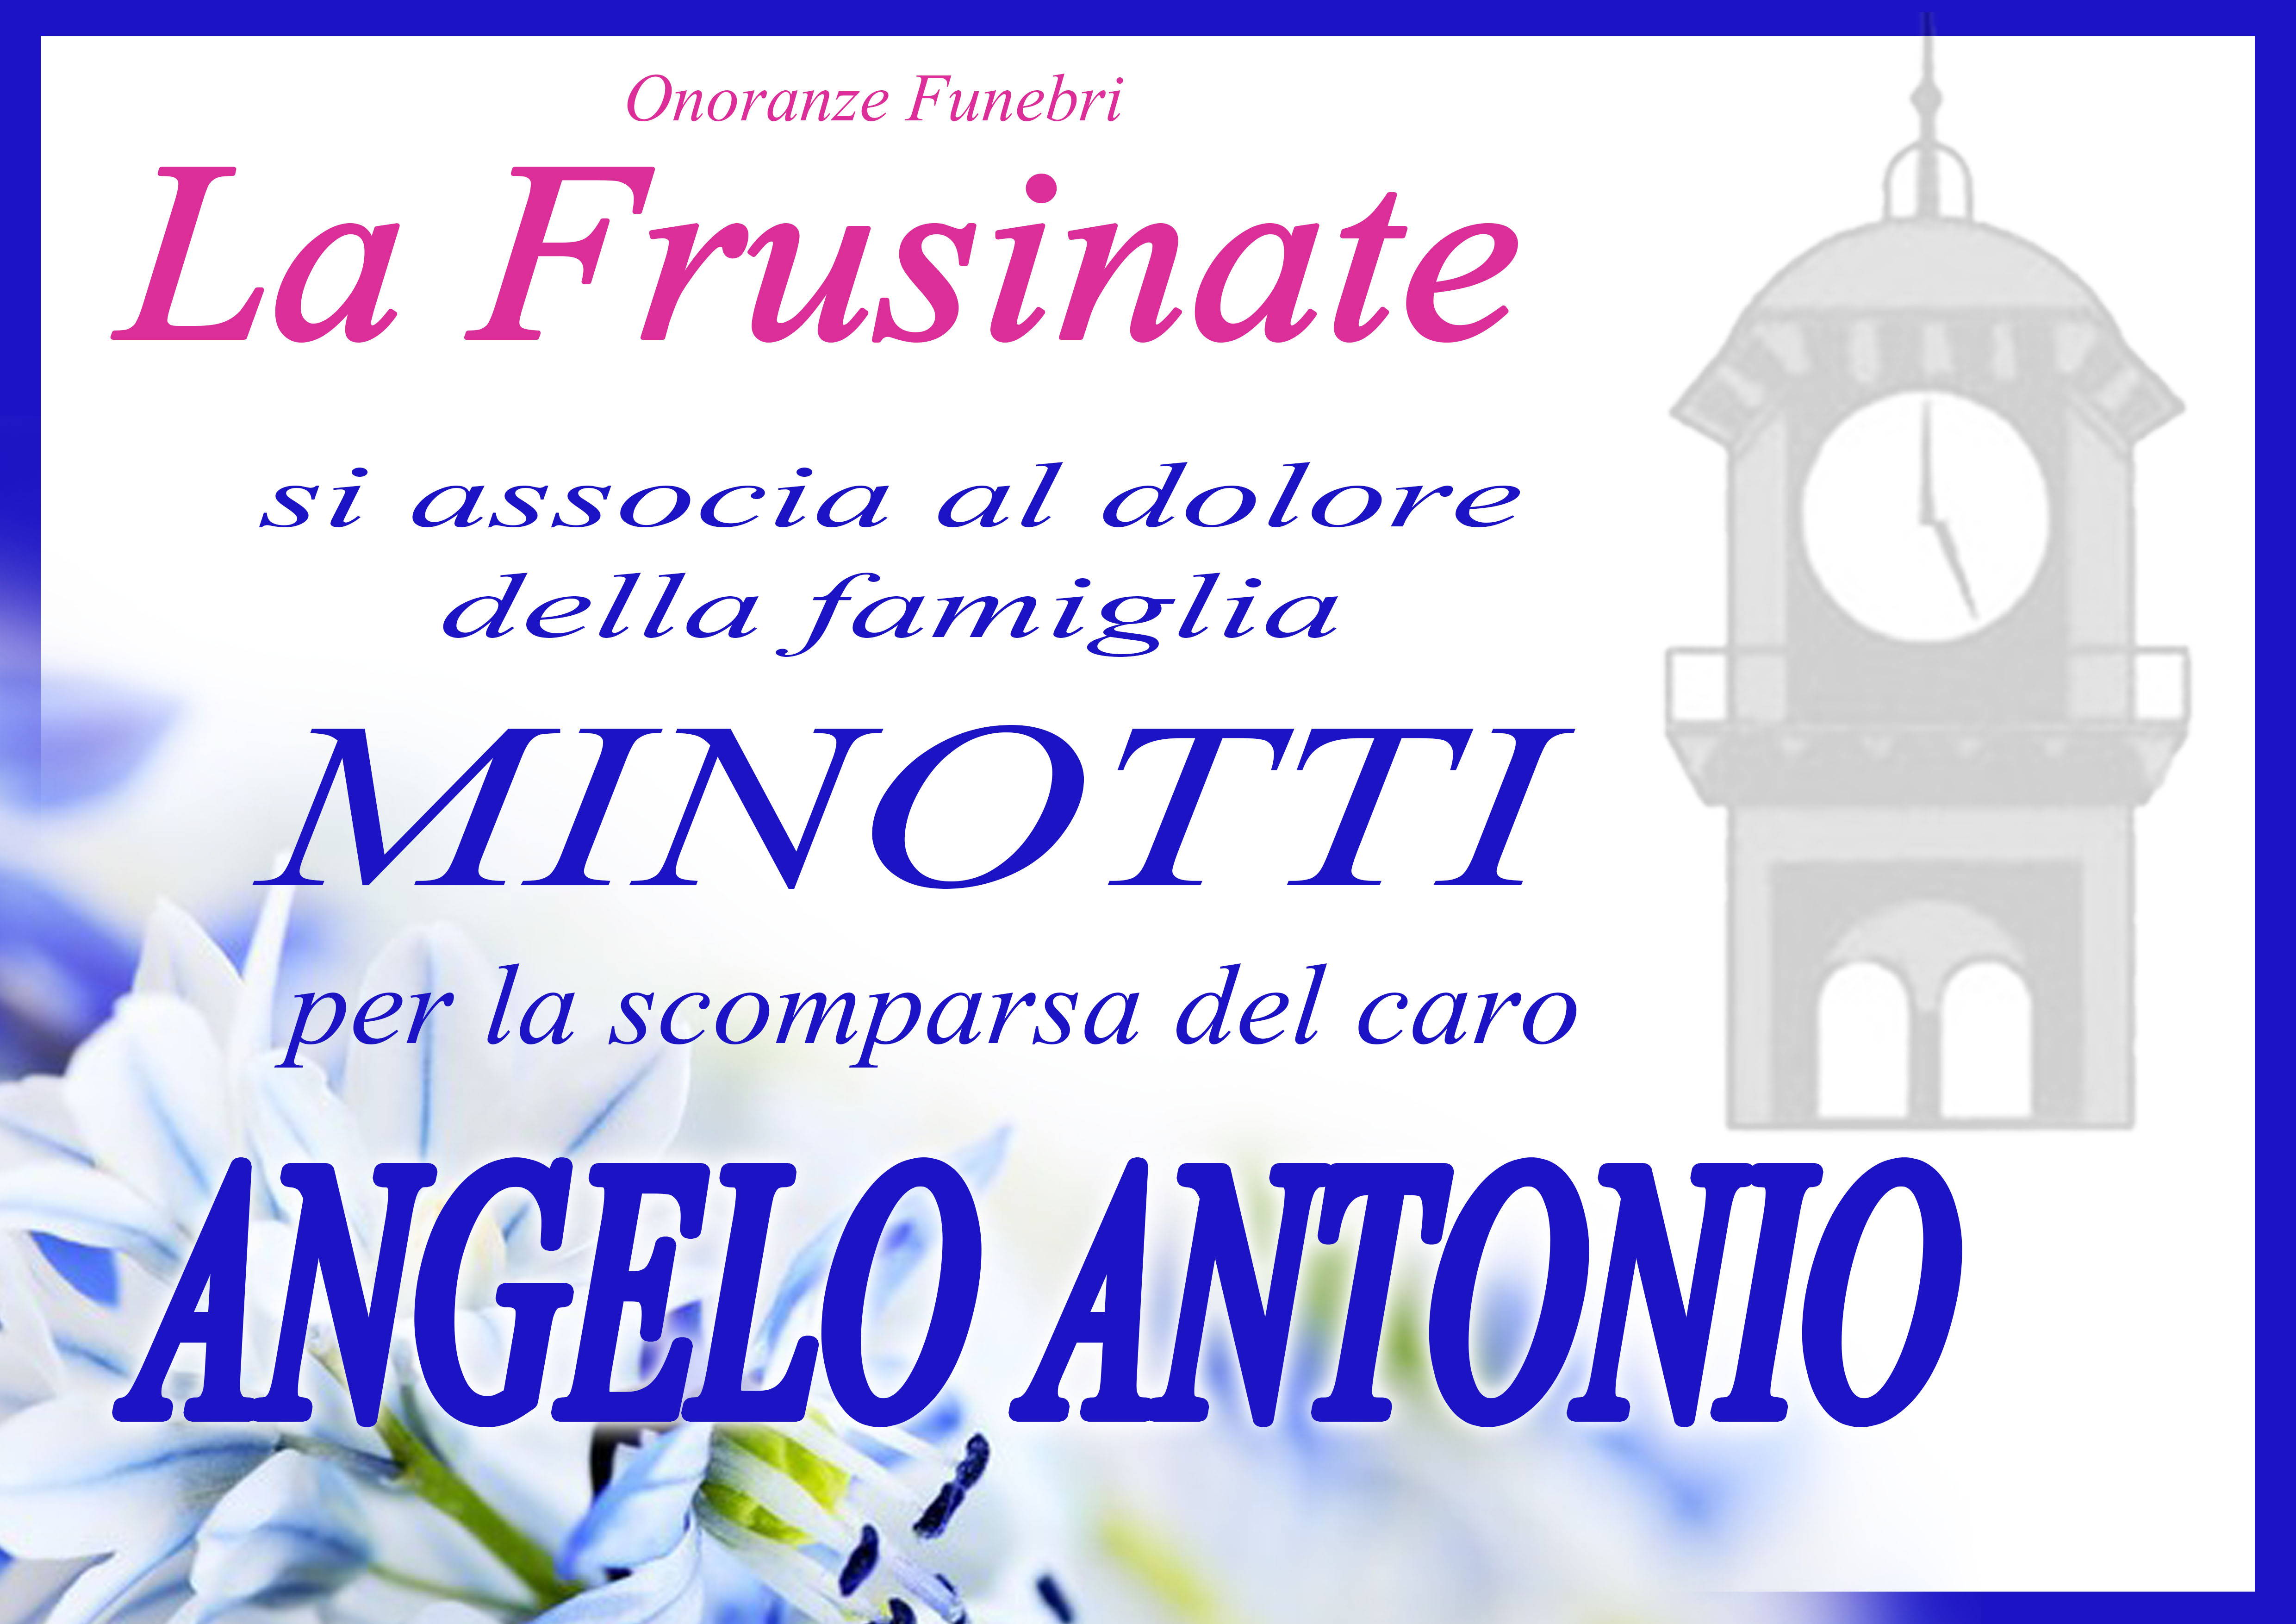 Angelo Antonio Minotti (P1)